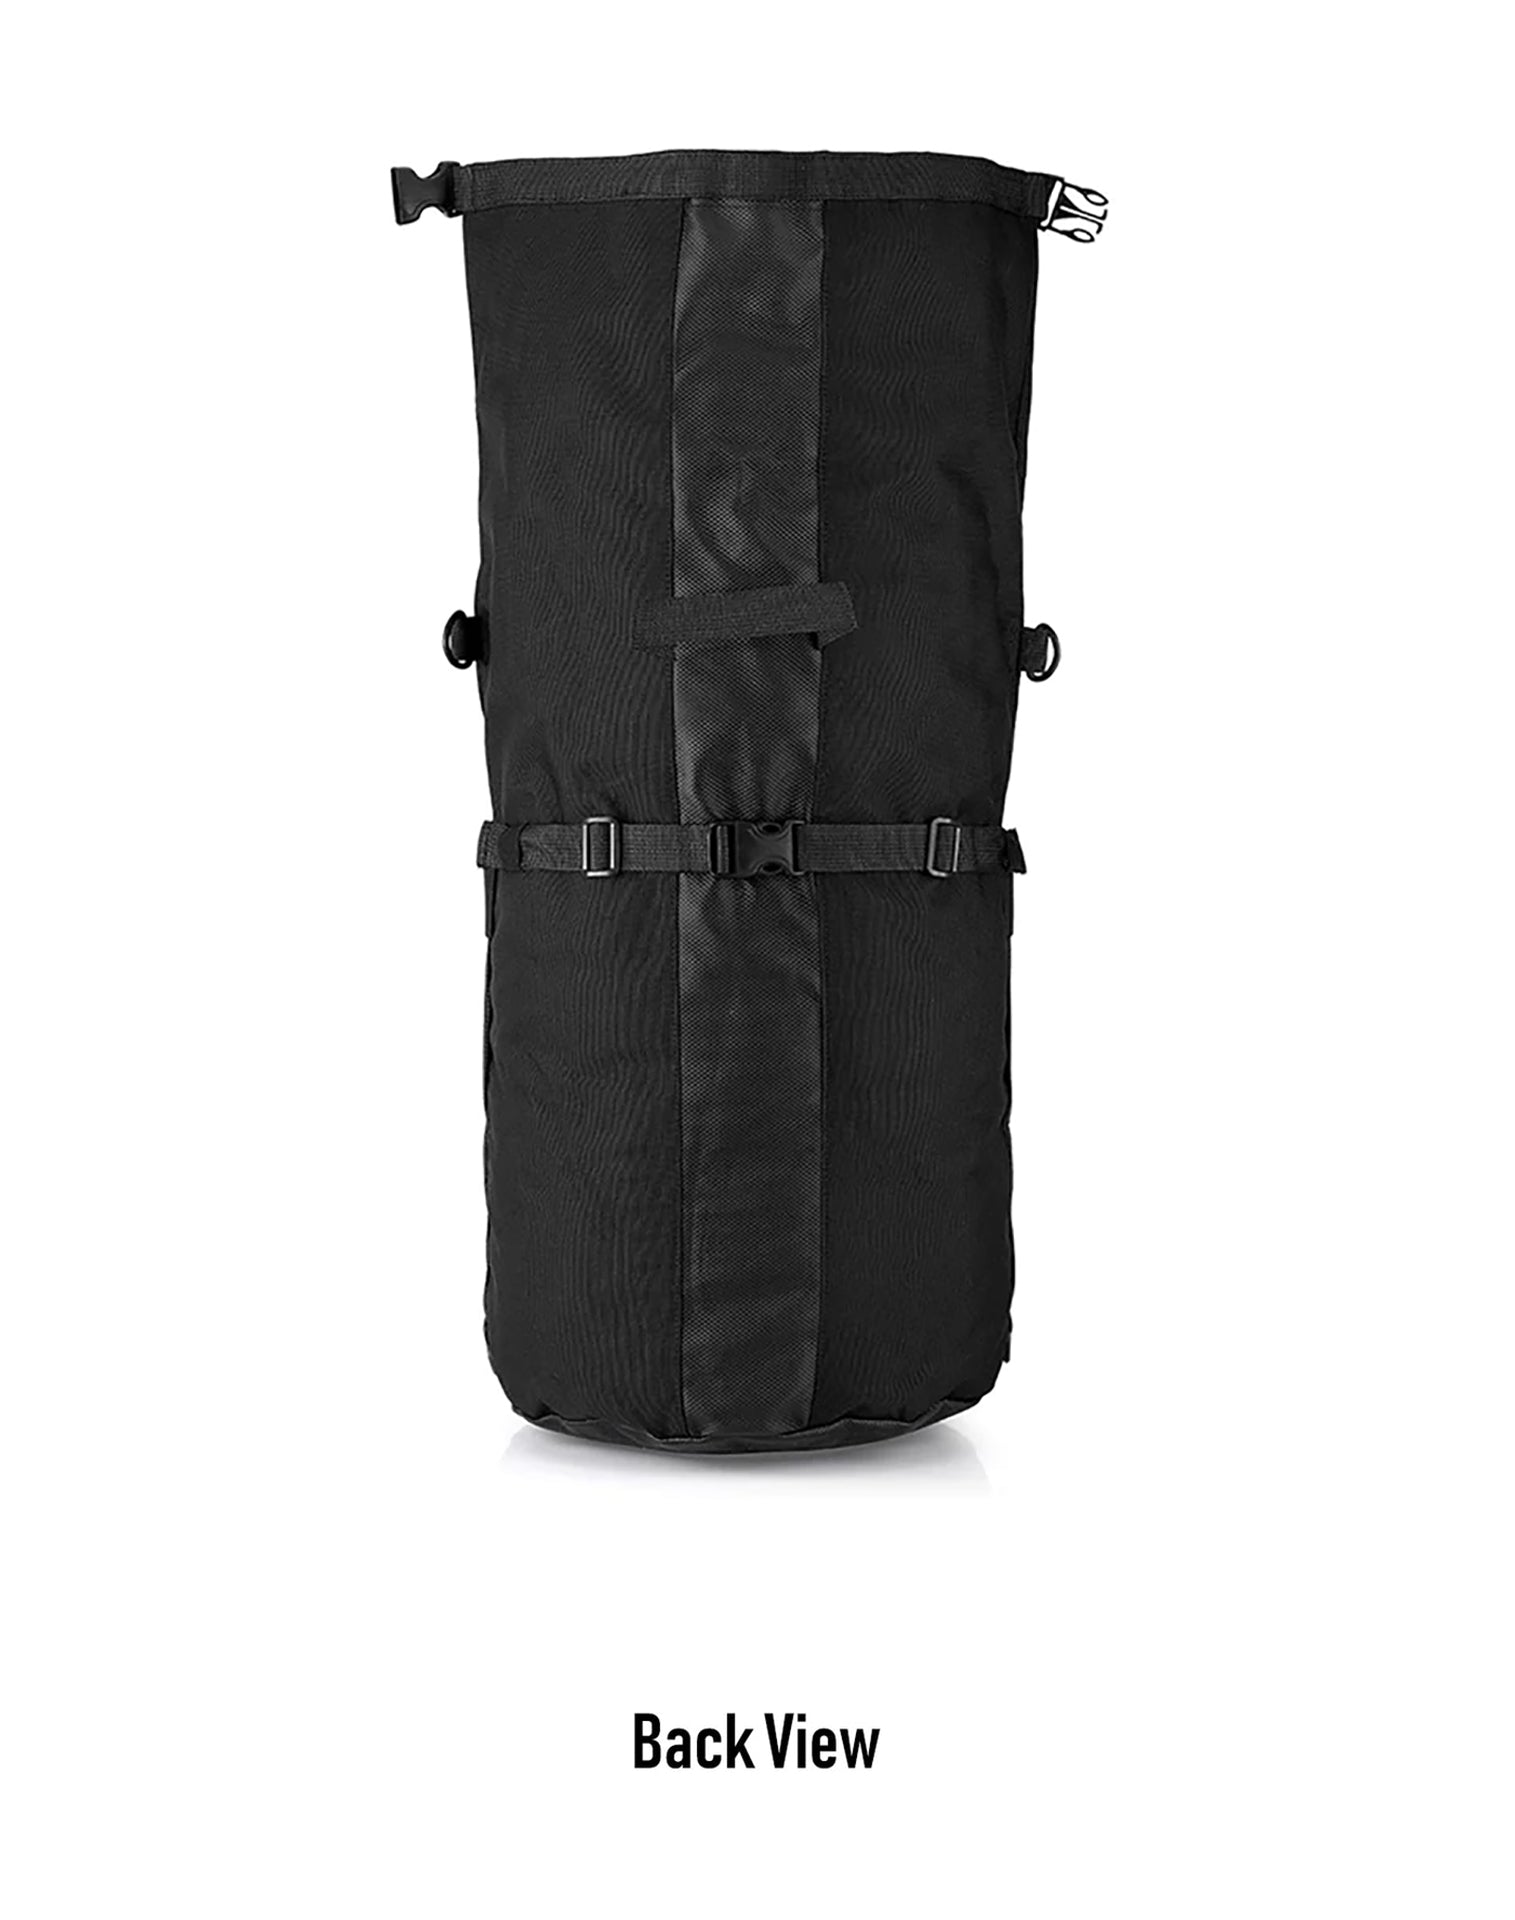 35L - Renegade XL Hyosung Motorcycle Tail Bag